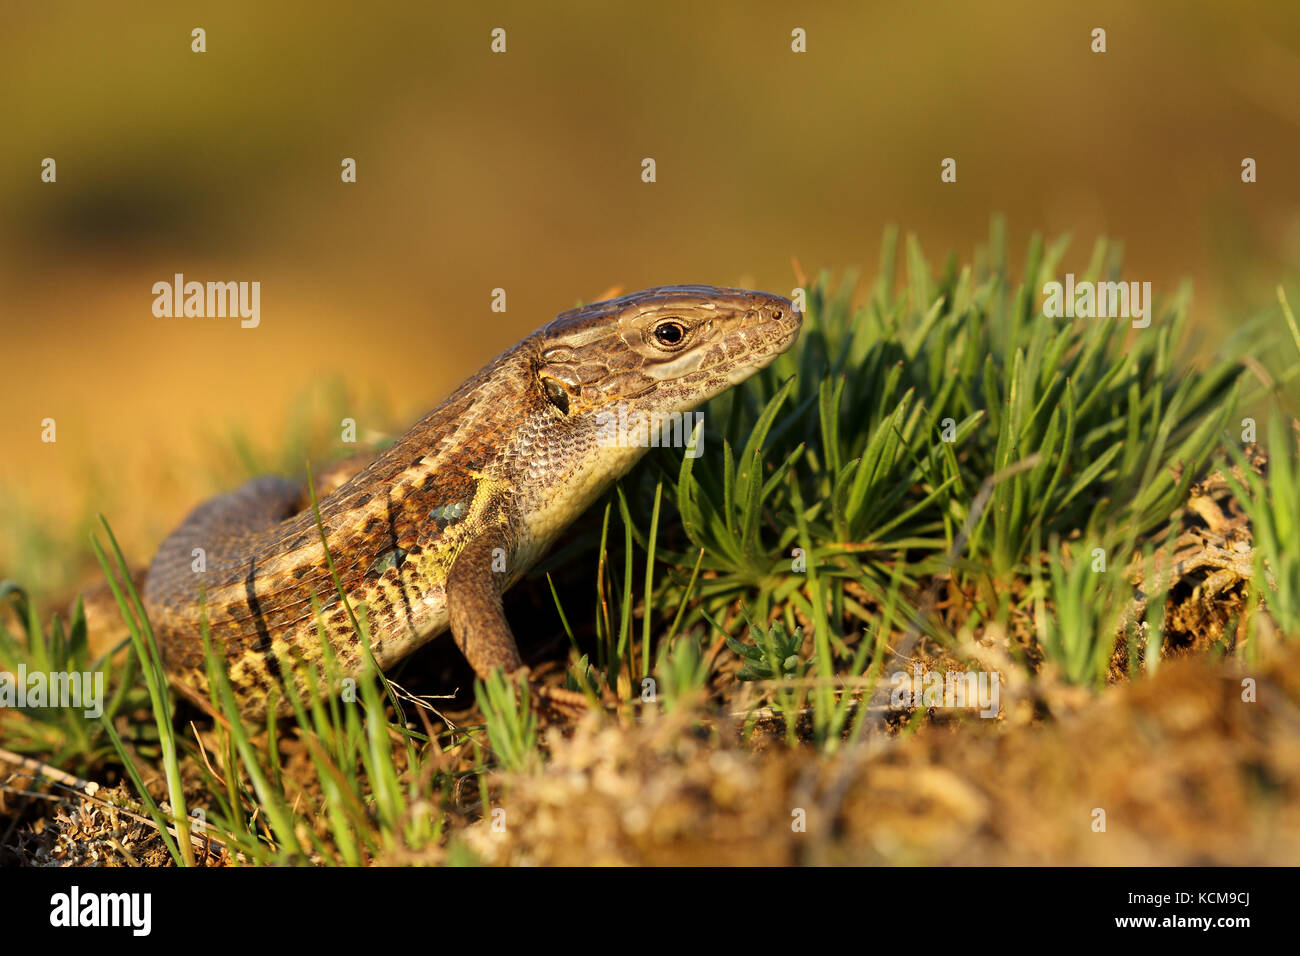 Long-tailes lizard (Psammodromus algirus) Stock Photo